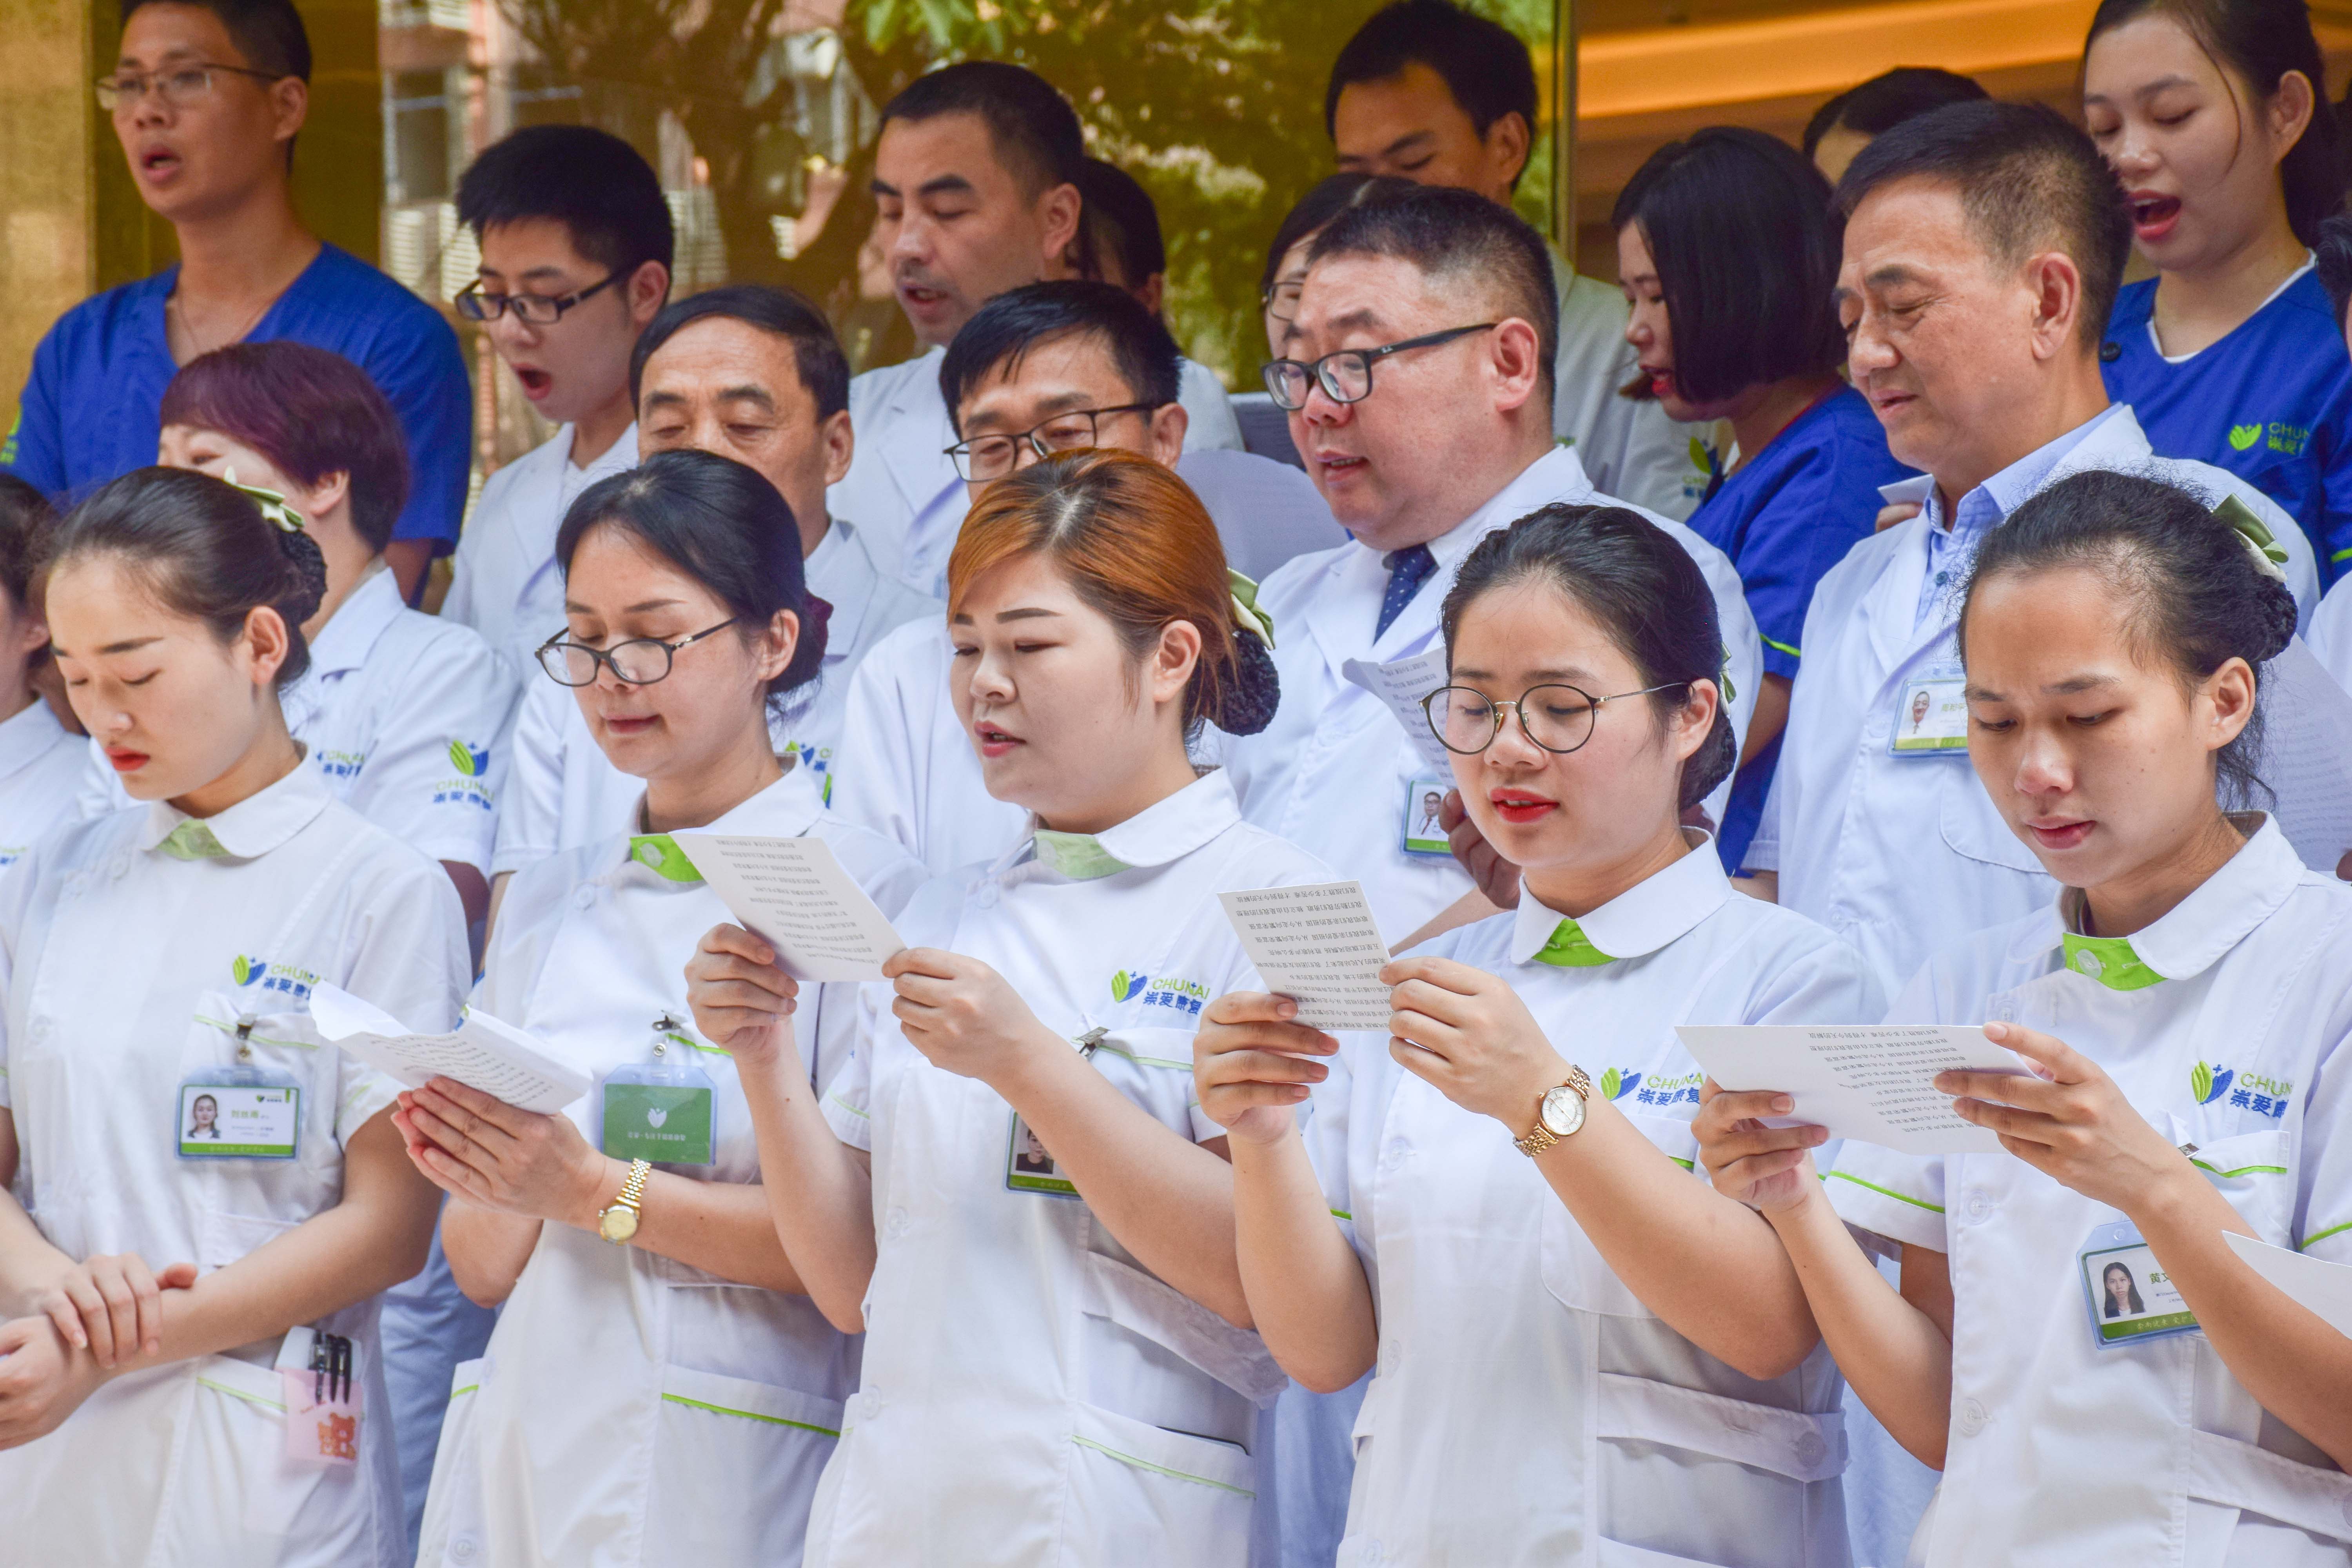 暨南大学崇爱医院全体医护人员举行了庆祝中国共产党成立98周年大会